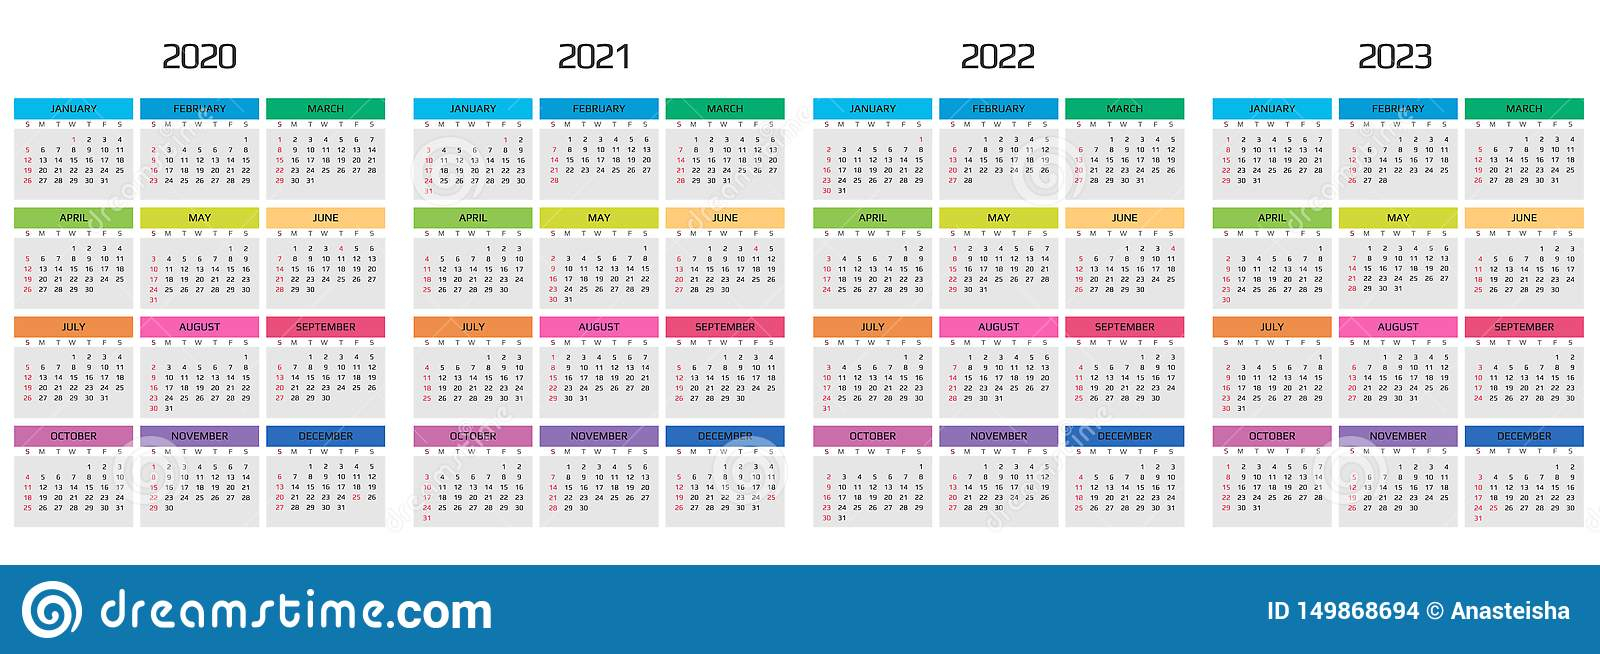 Calendar 2020 2021 2022 2023 Template. 12 Months